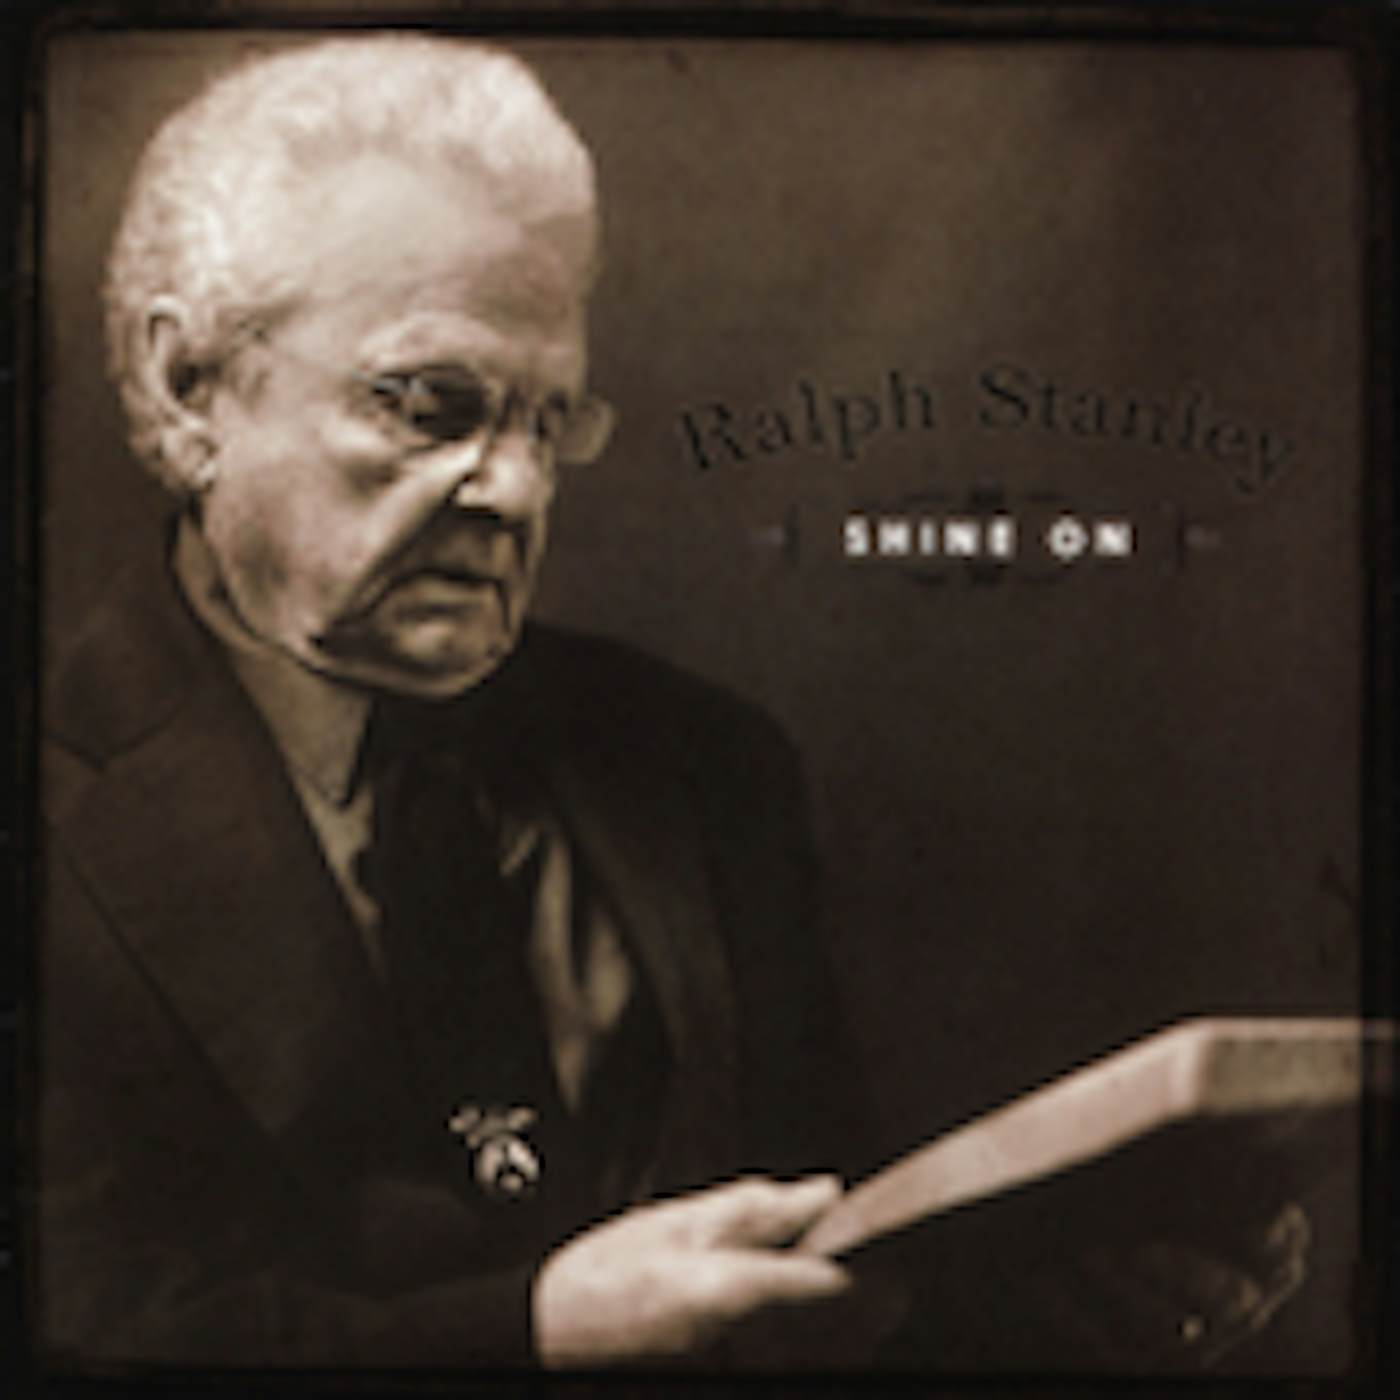 Ralph Stanley SHINE ON CD